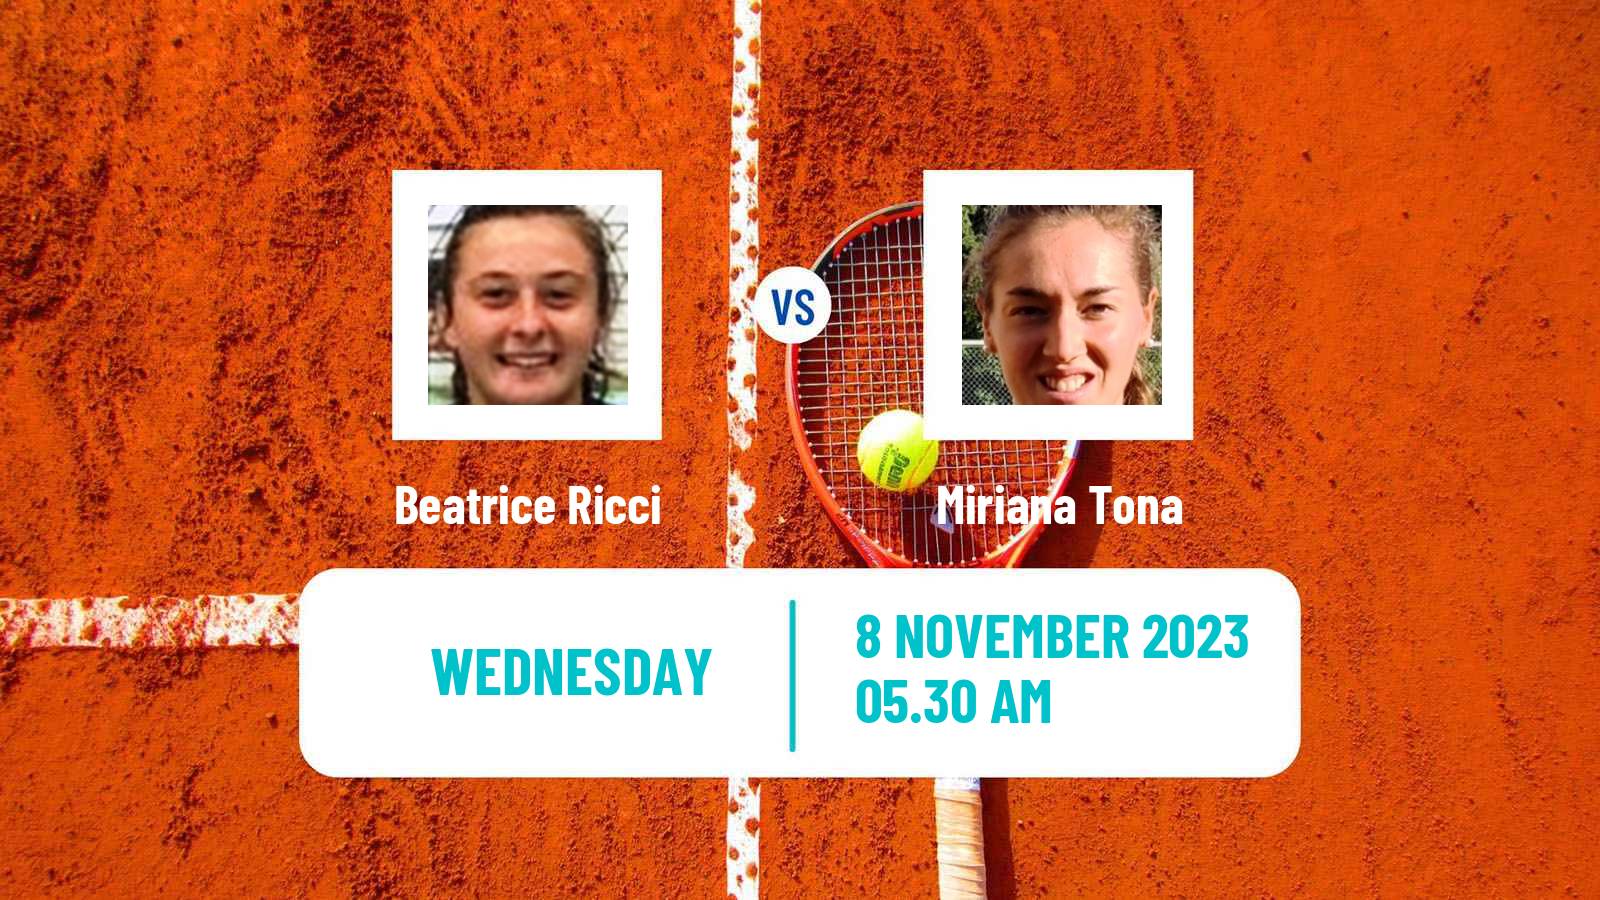 Tennis ITF W25 Solarino 2 Women Beatrice Ricci - Miriana Tona